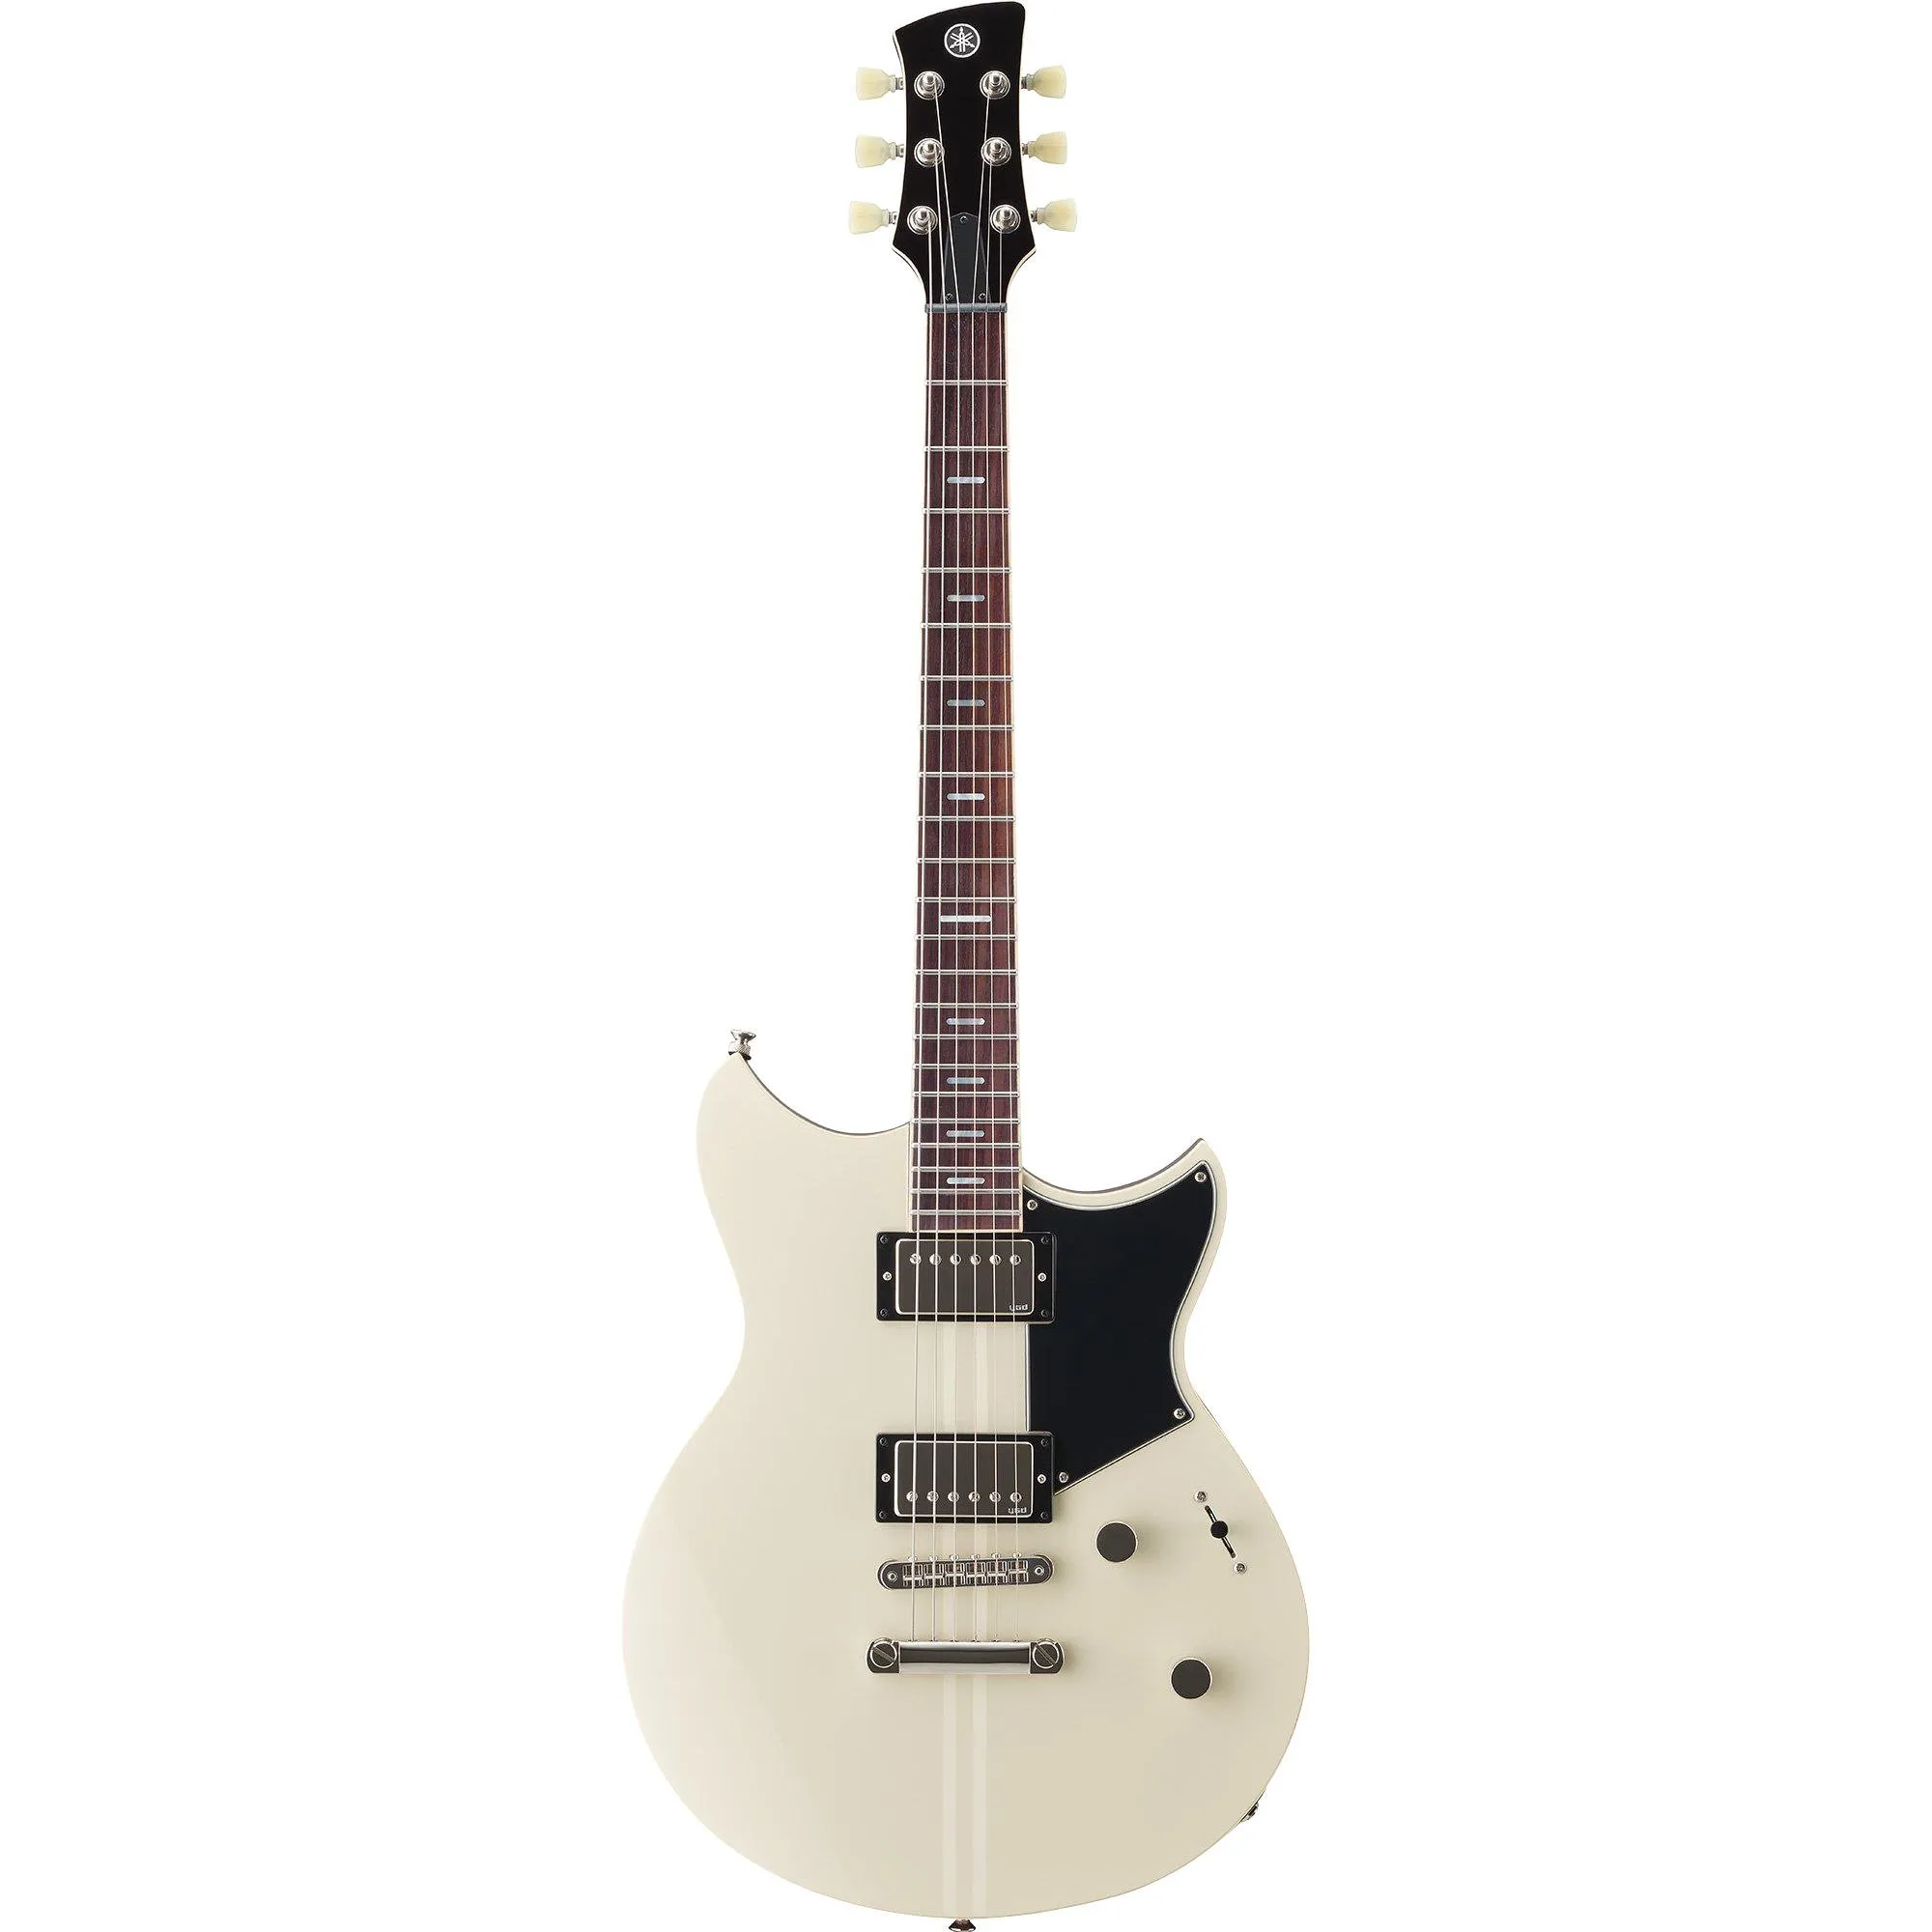 Guitarra Yamaha Revstar RSS 20 Vintage White por 7.599,99 à vista no boleto/pix ou parcele em até 12x sem juros. Compre na loja Mundomax!